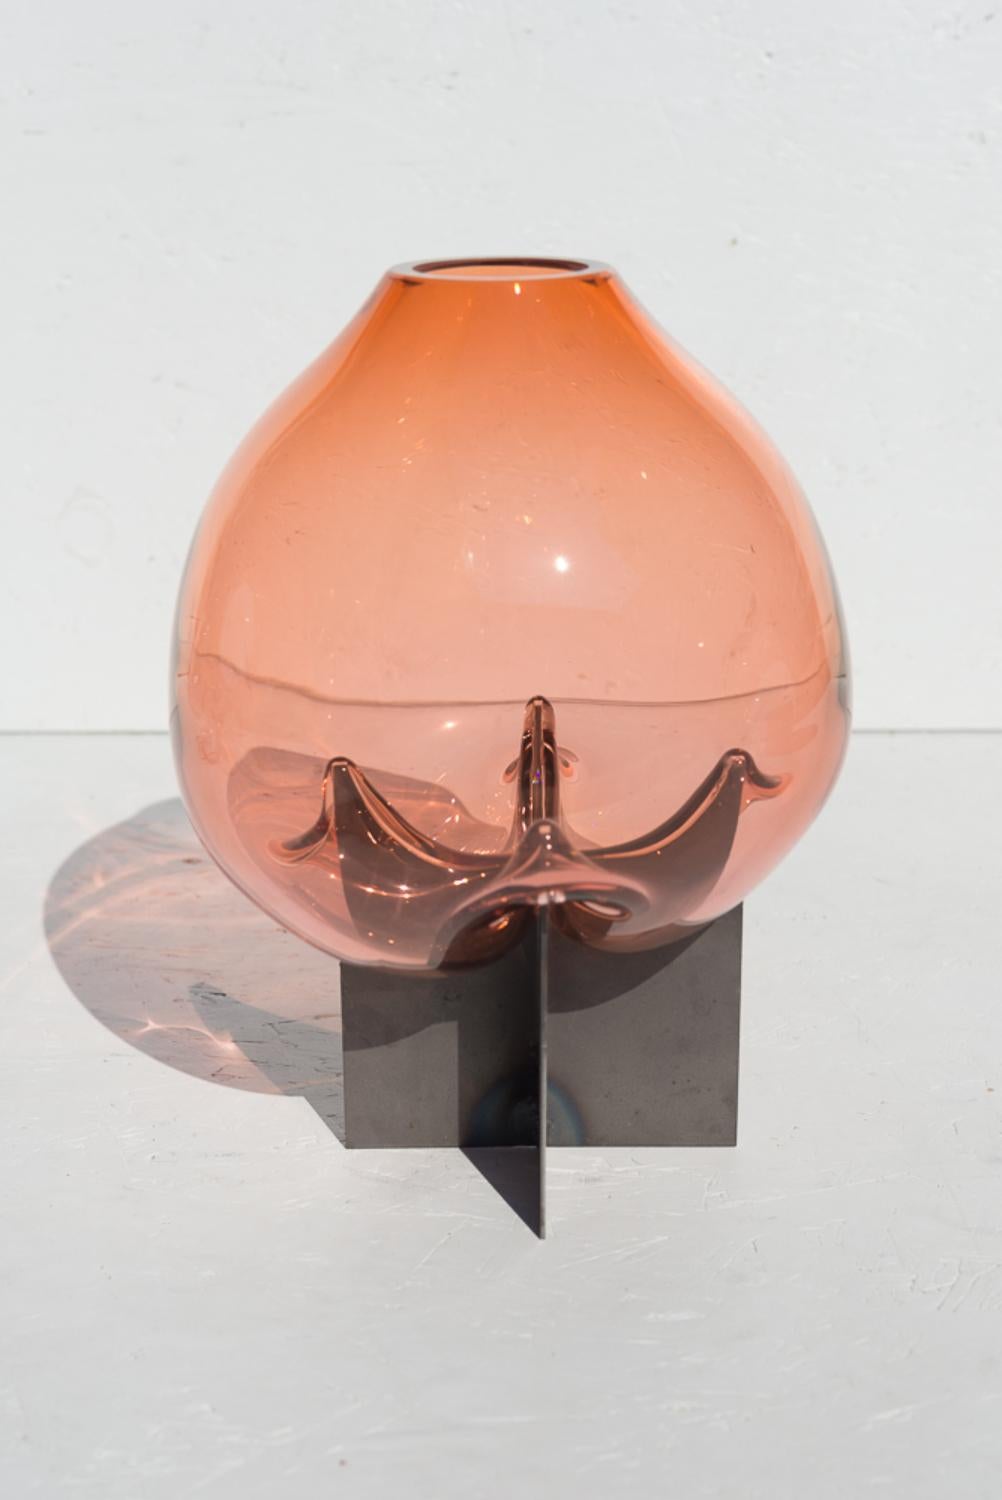 Vase de table rose percé de Studio Thier & van Daalen
Dimensions : L 35 x D&H 25 x H 25cm
MATERIAL : acier, verre

Le Studio souhaitait trouver un moyen de mettre en valeur la fluidité du verre. C'est pourquoi ils ont cherché le contraste entre